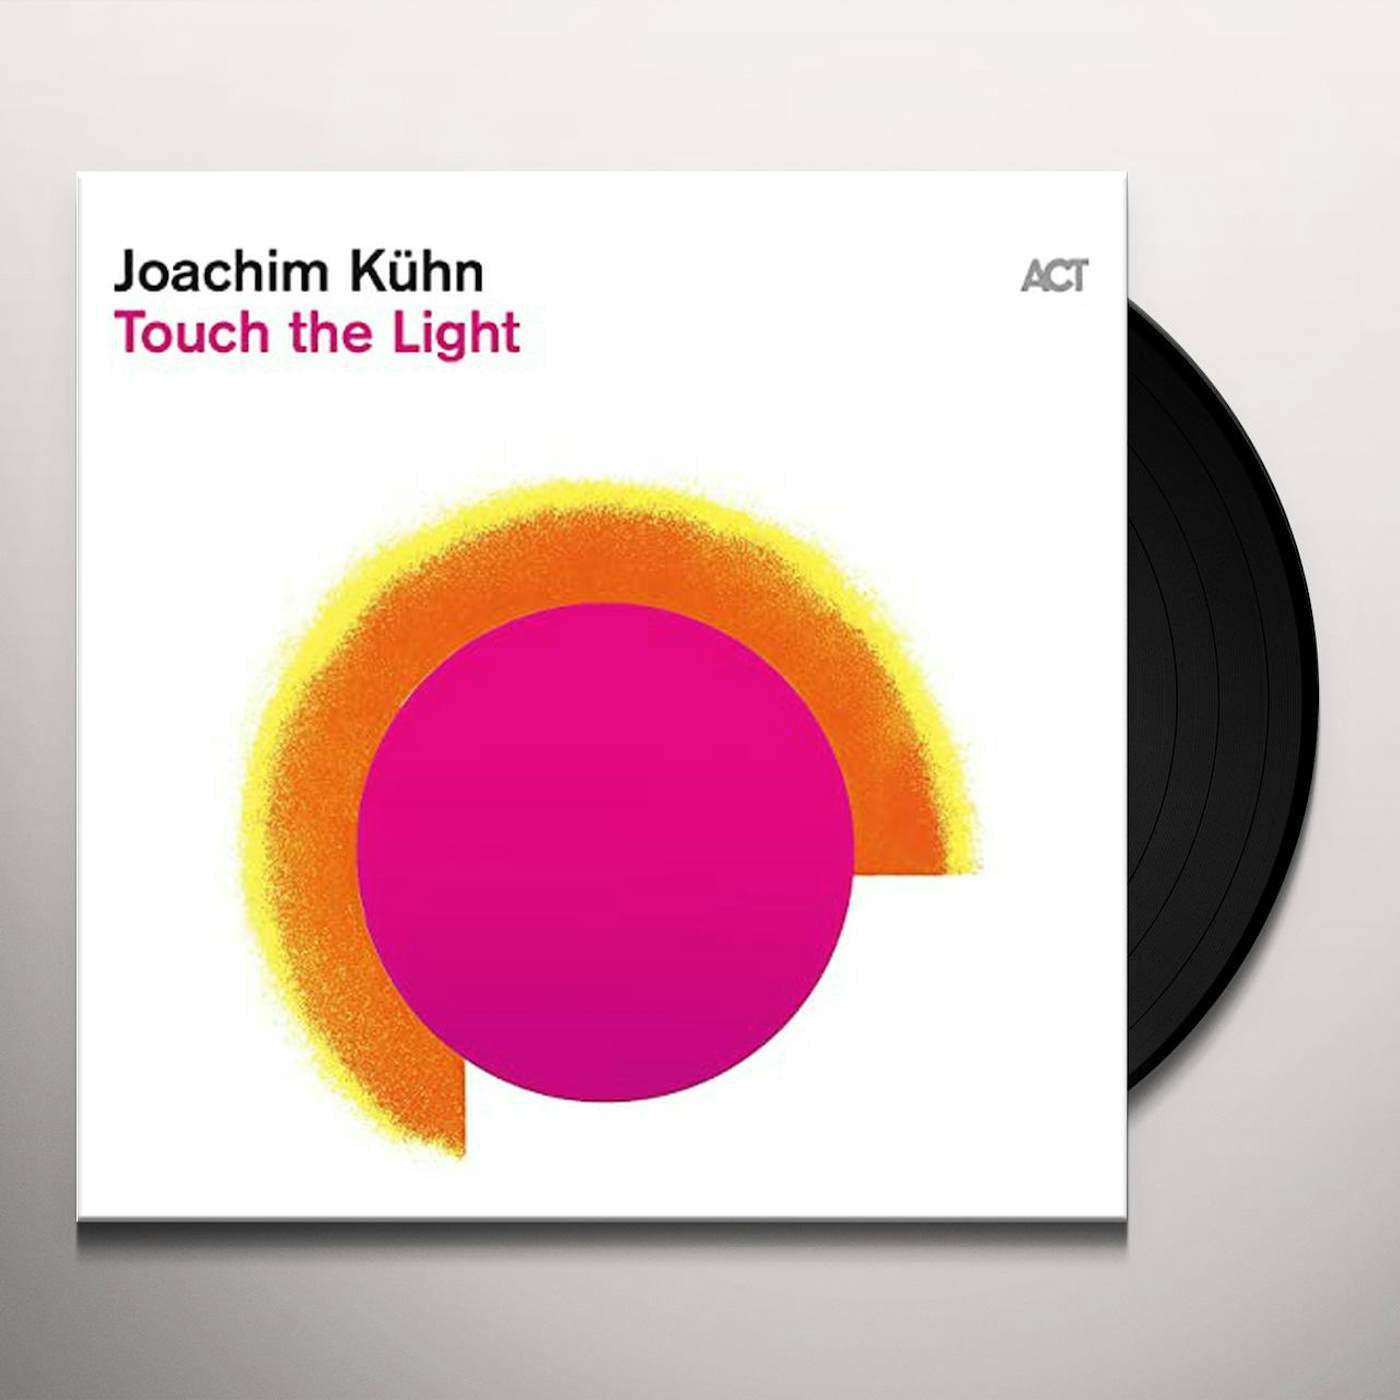 Joachim Kuhn Touch The Light Vinyl Record